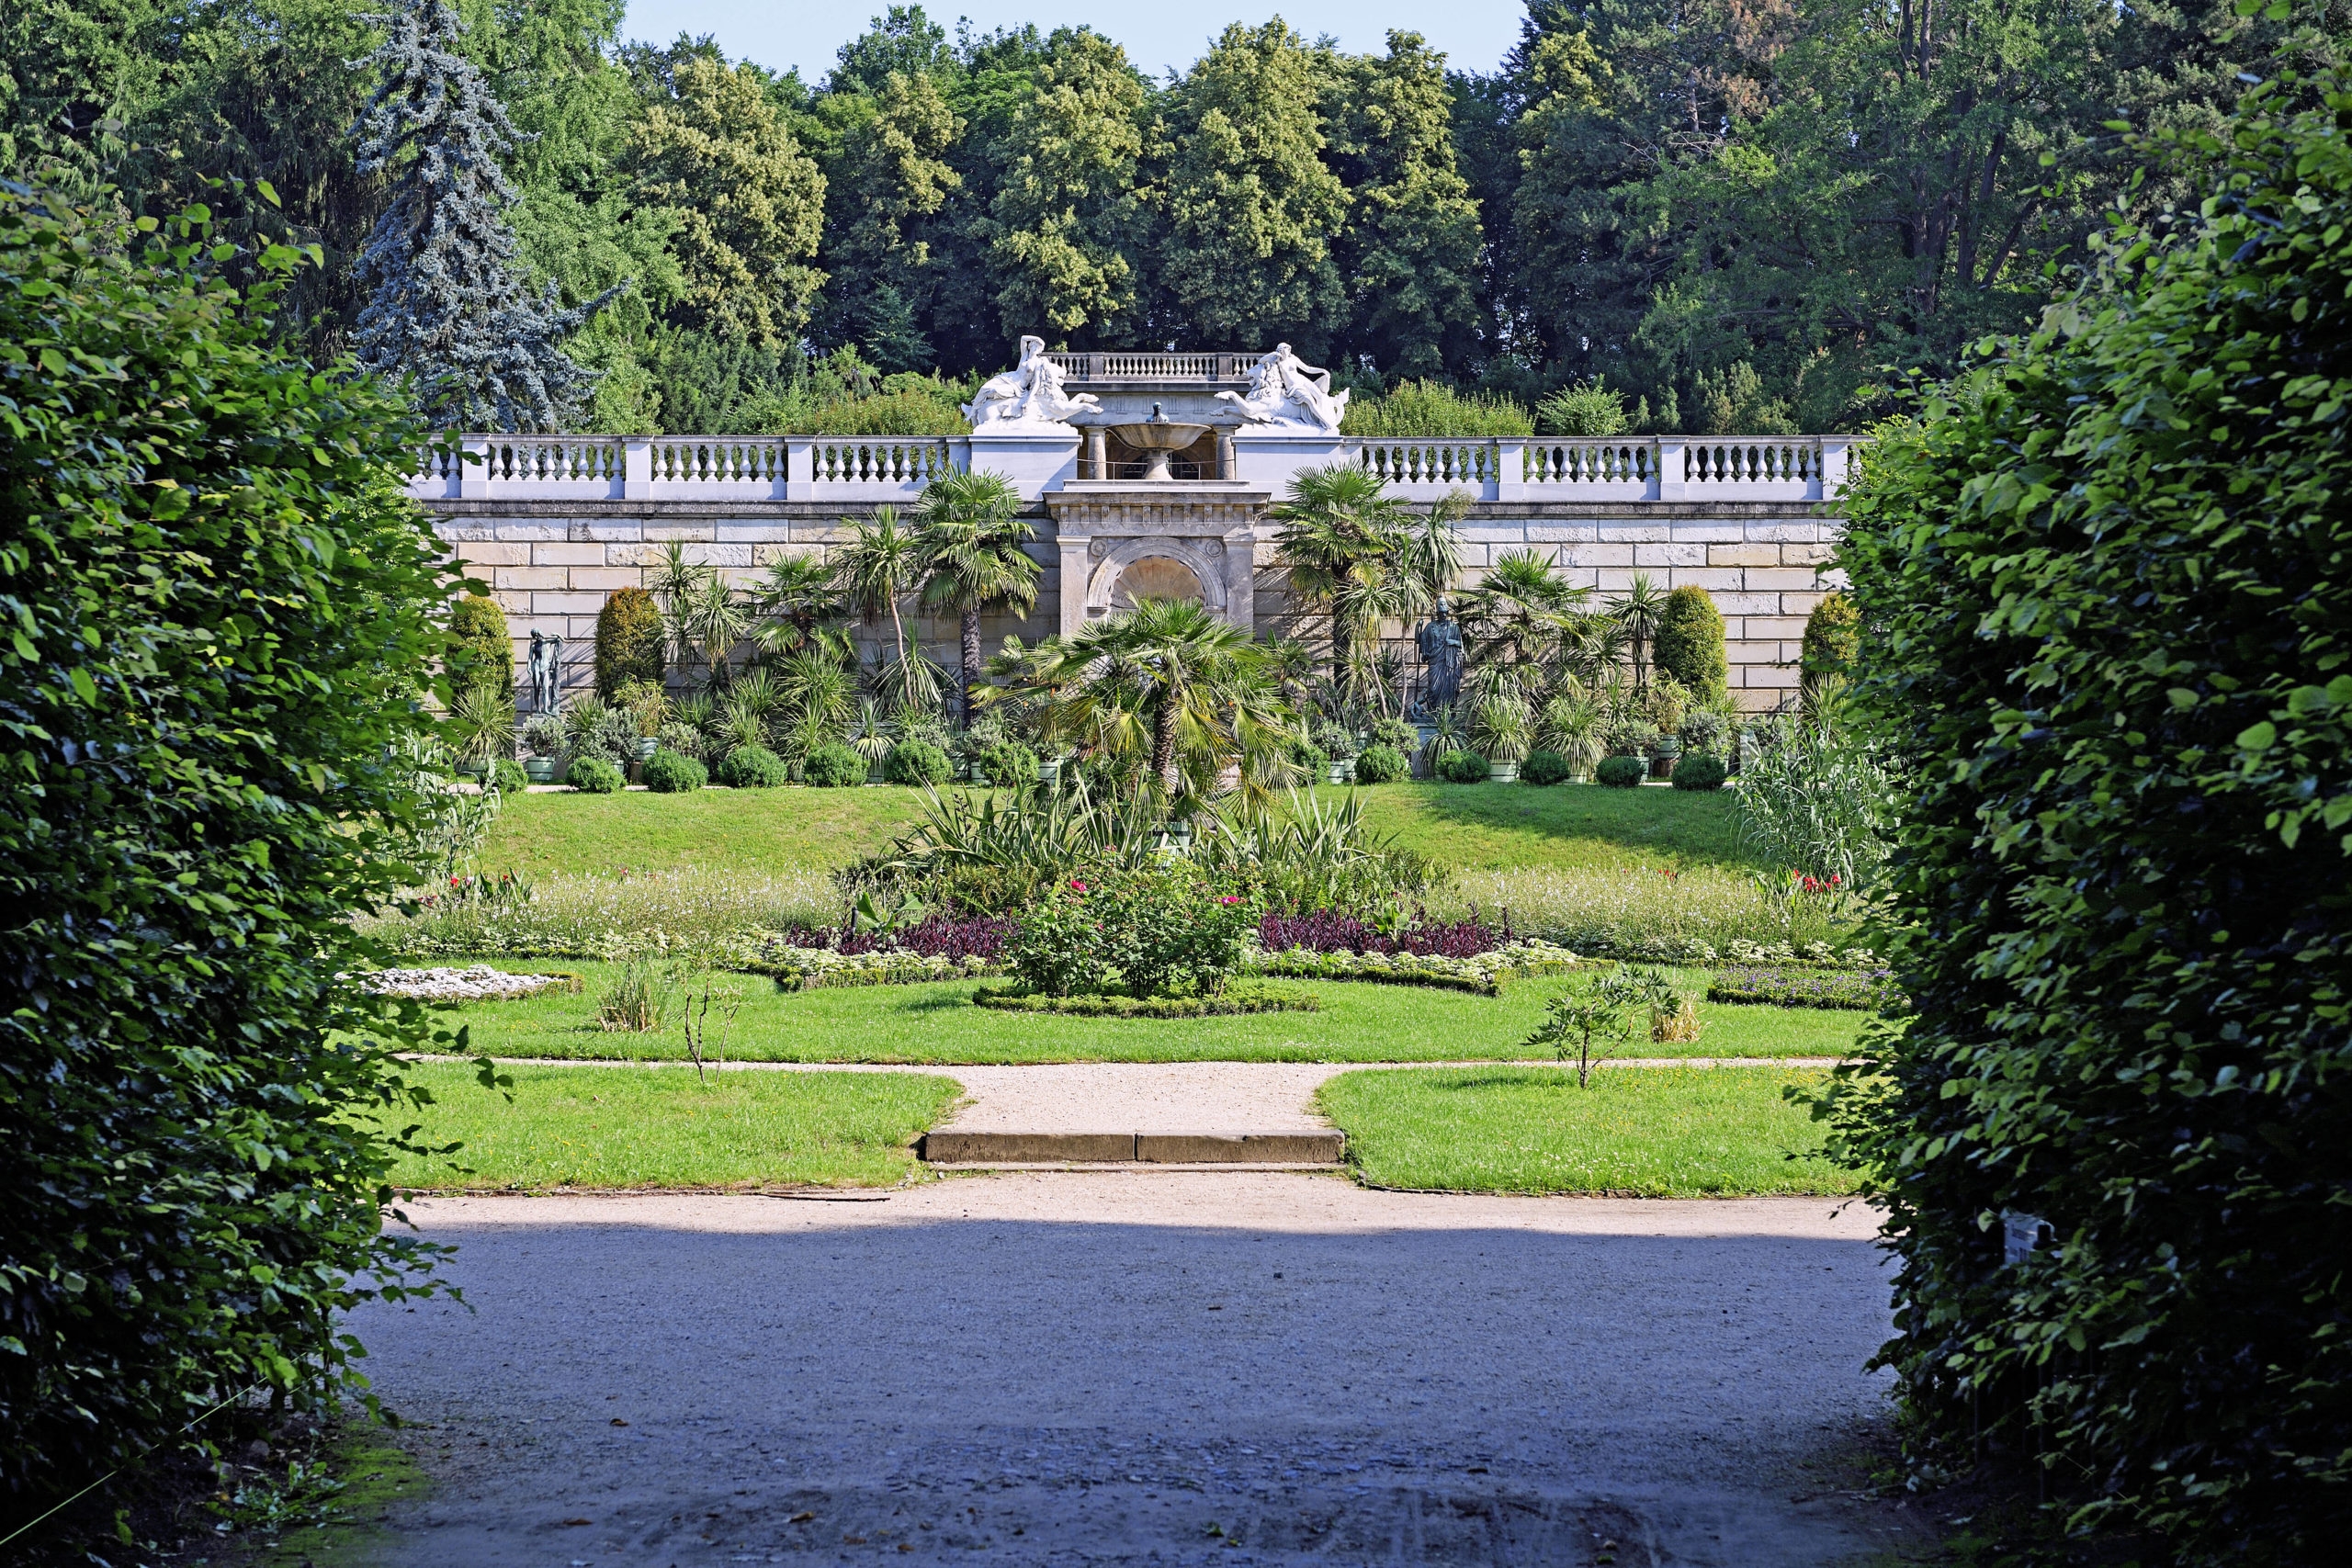 Park Sanssouci Im sizilianischen Garten des Parks Sanssouci wurde mit südländischen Gewächsen und antiken Statuen eine besondere Atmosphäre geschaffen.